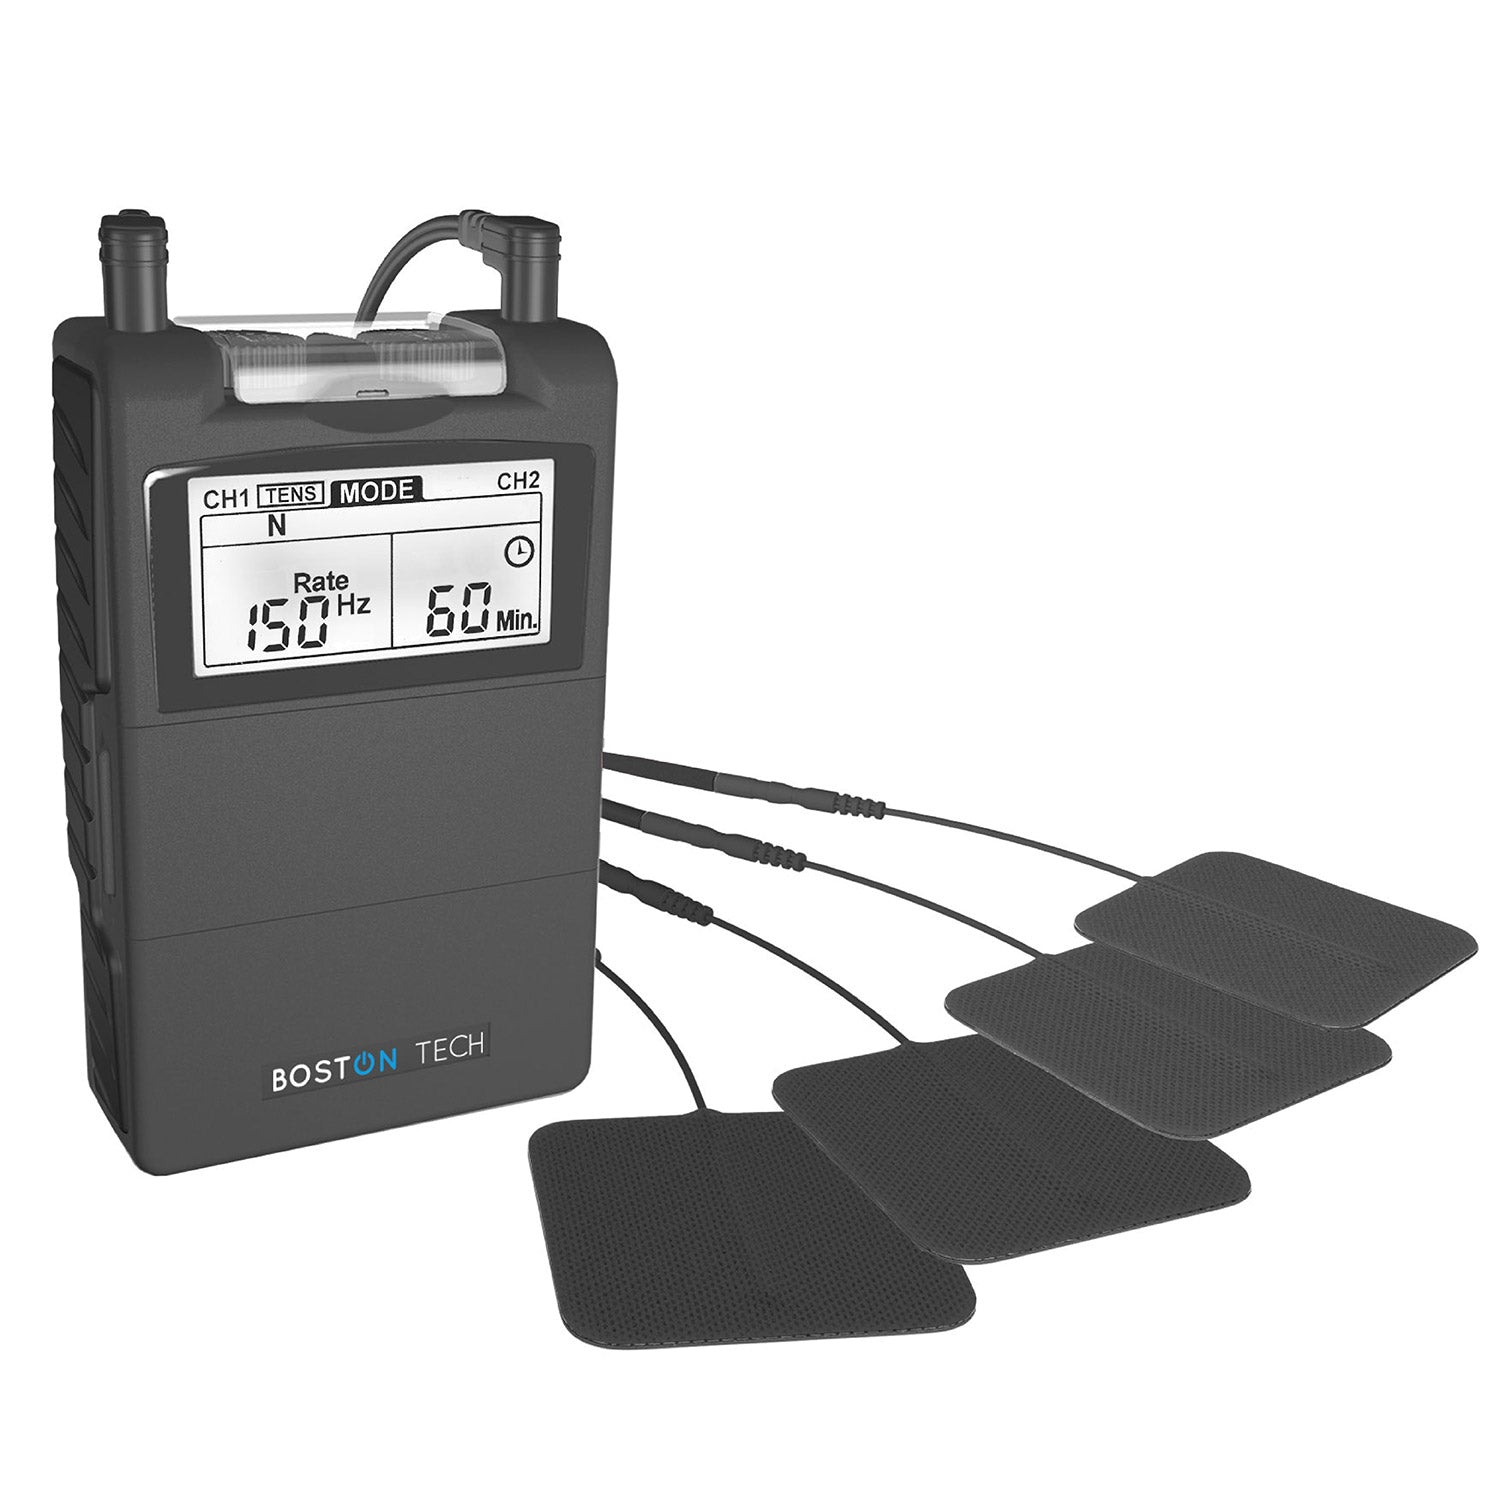 Electro estimulador Digital TENS, EMS - ME-89 plus